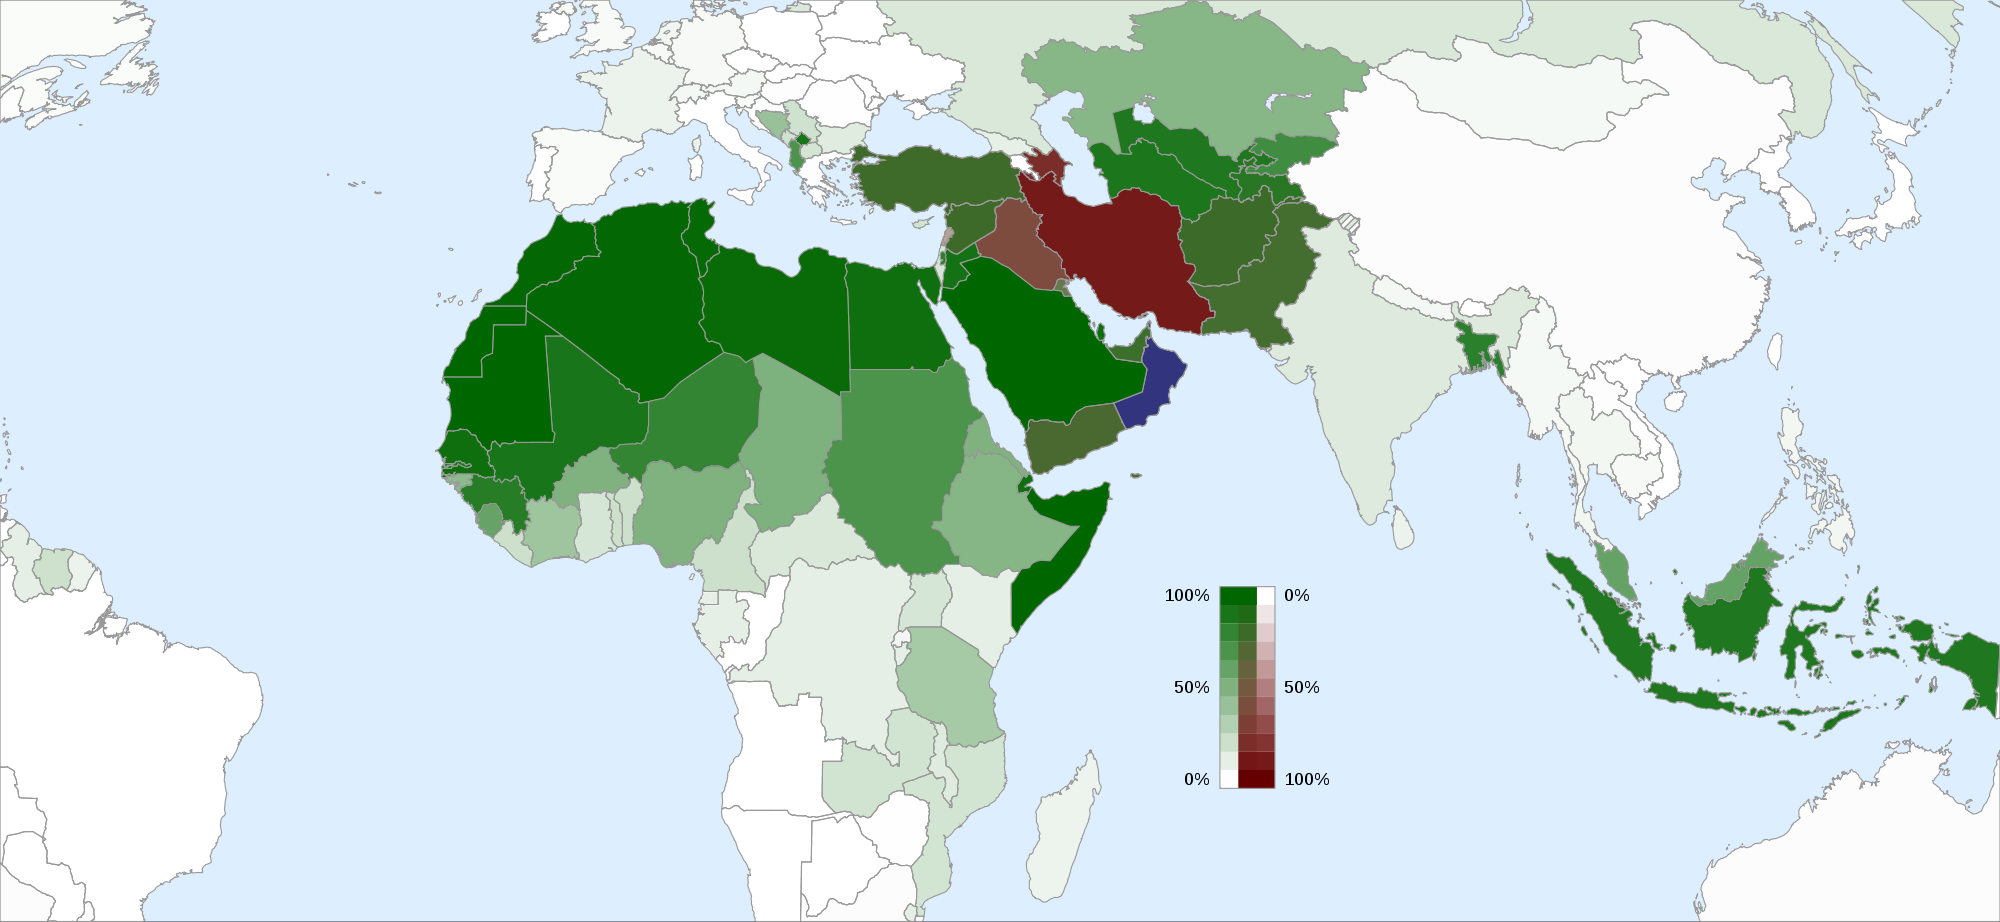 Με πράσινο χρώμα είναι οι χώρες των Σουνιτών και με κόκκινο οι χώρες που κυριαρχούν οι Σιίτες